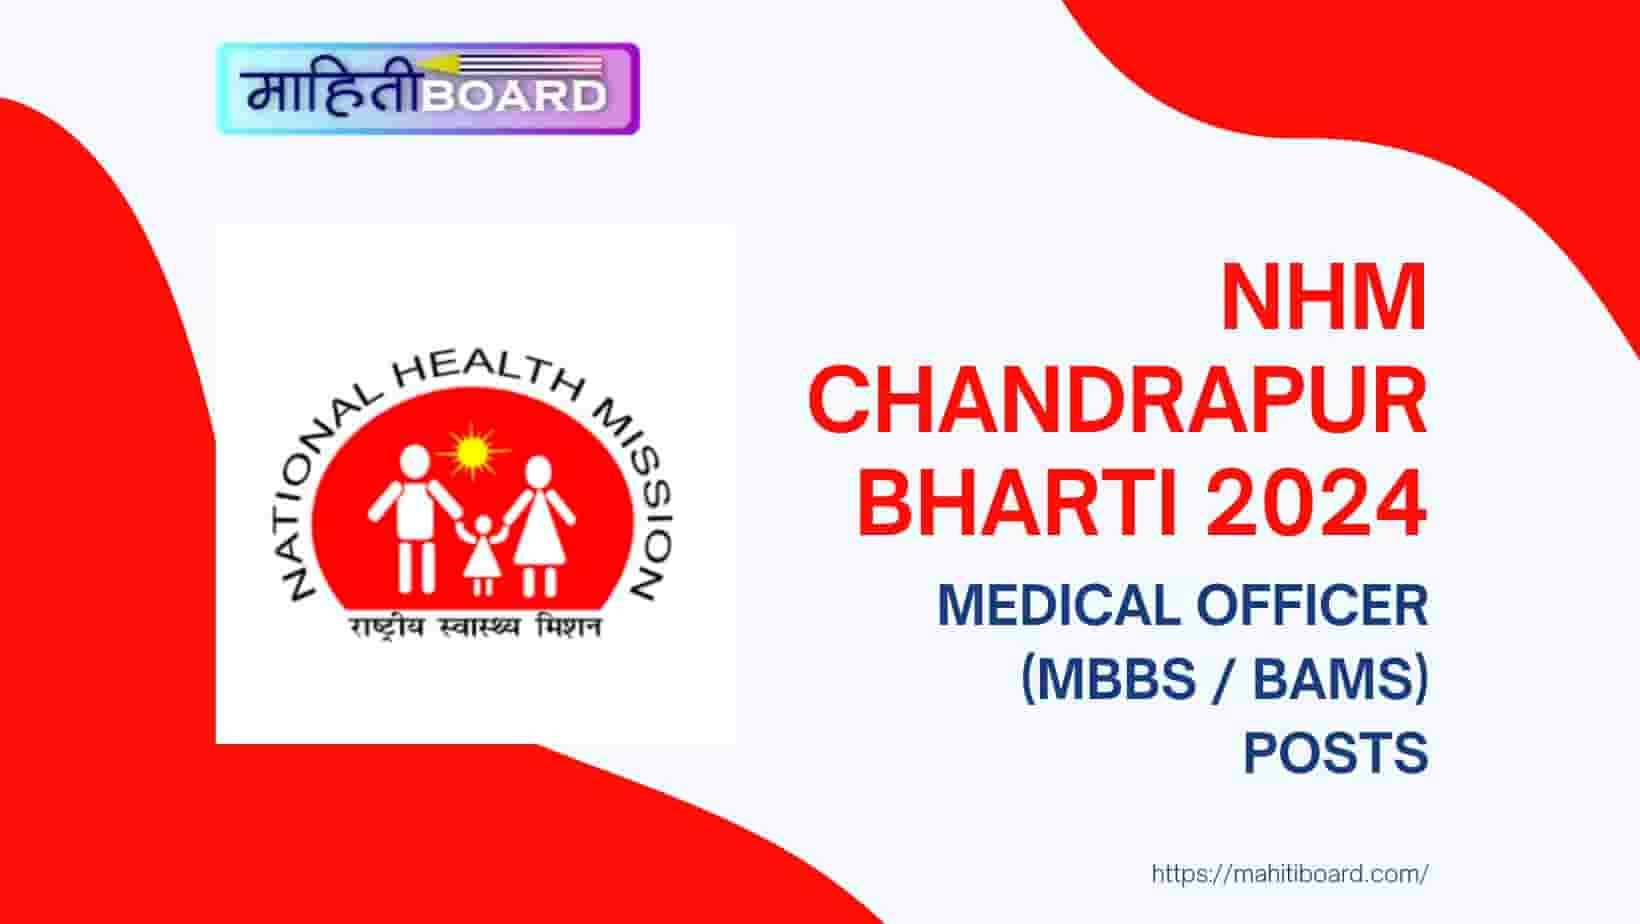 NHM Chandrapur Bharti 2024